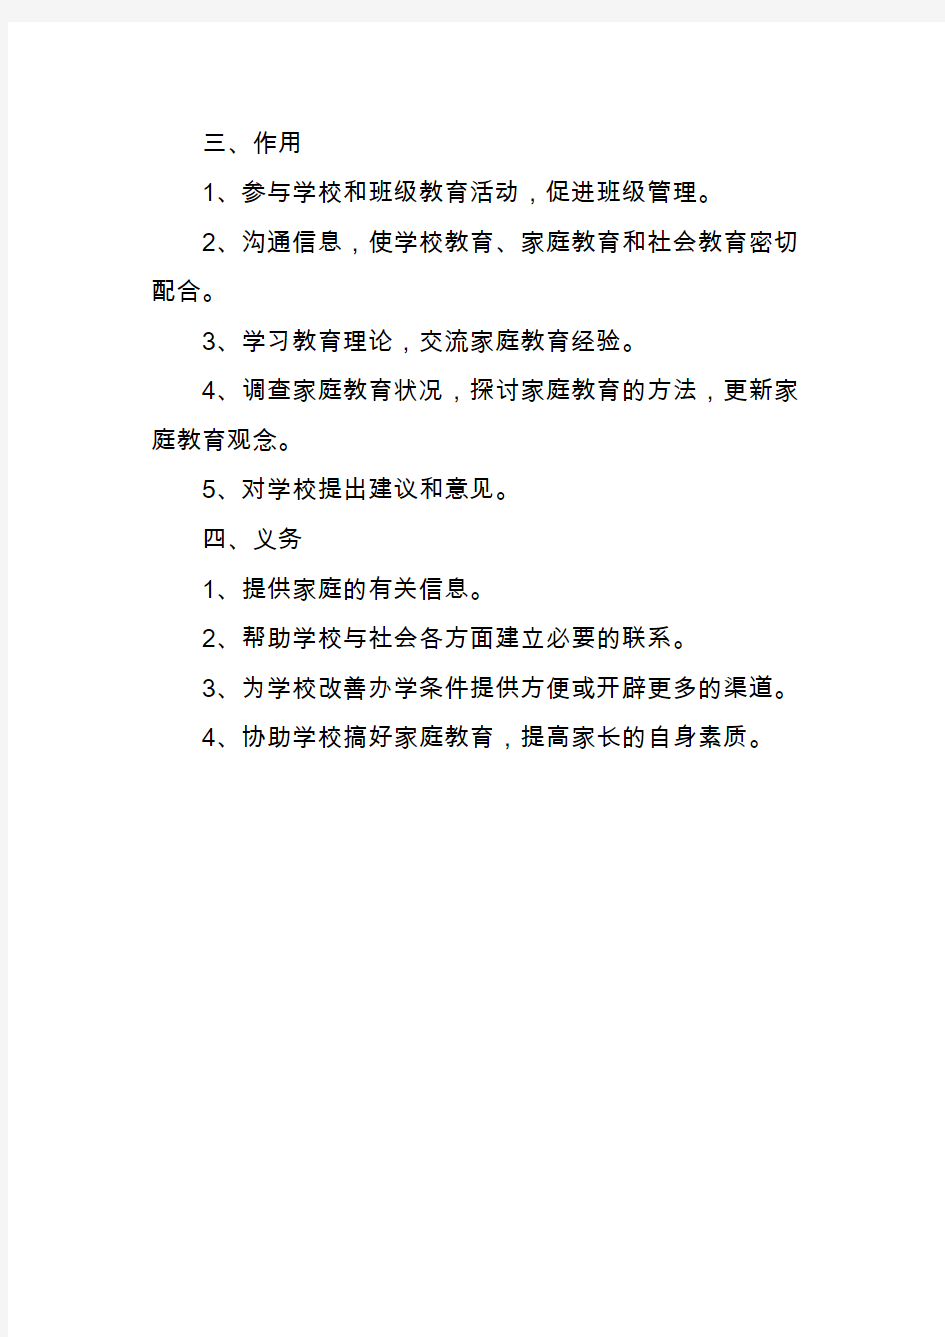 和静县第八小学家长委员会管理办法